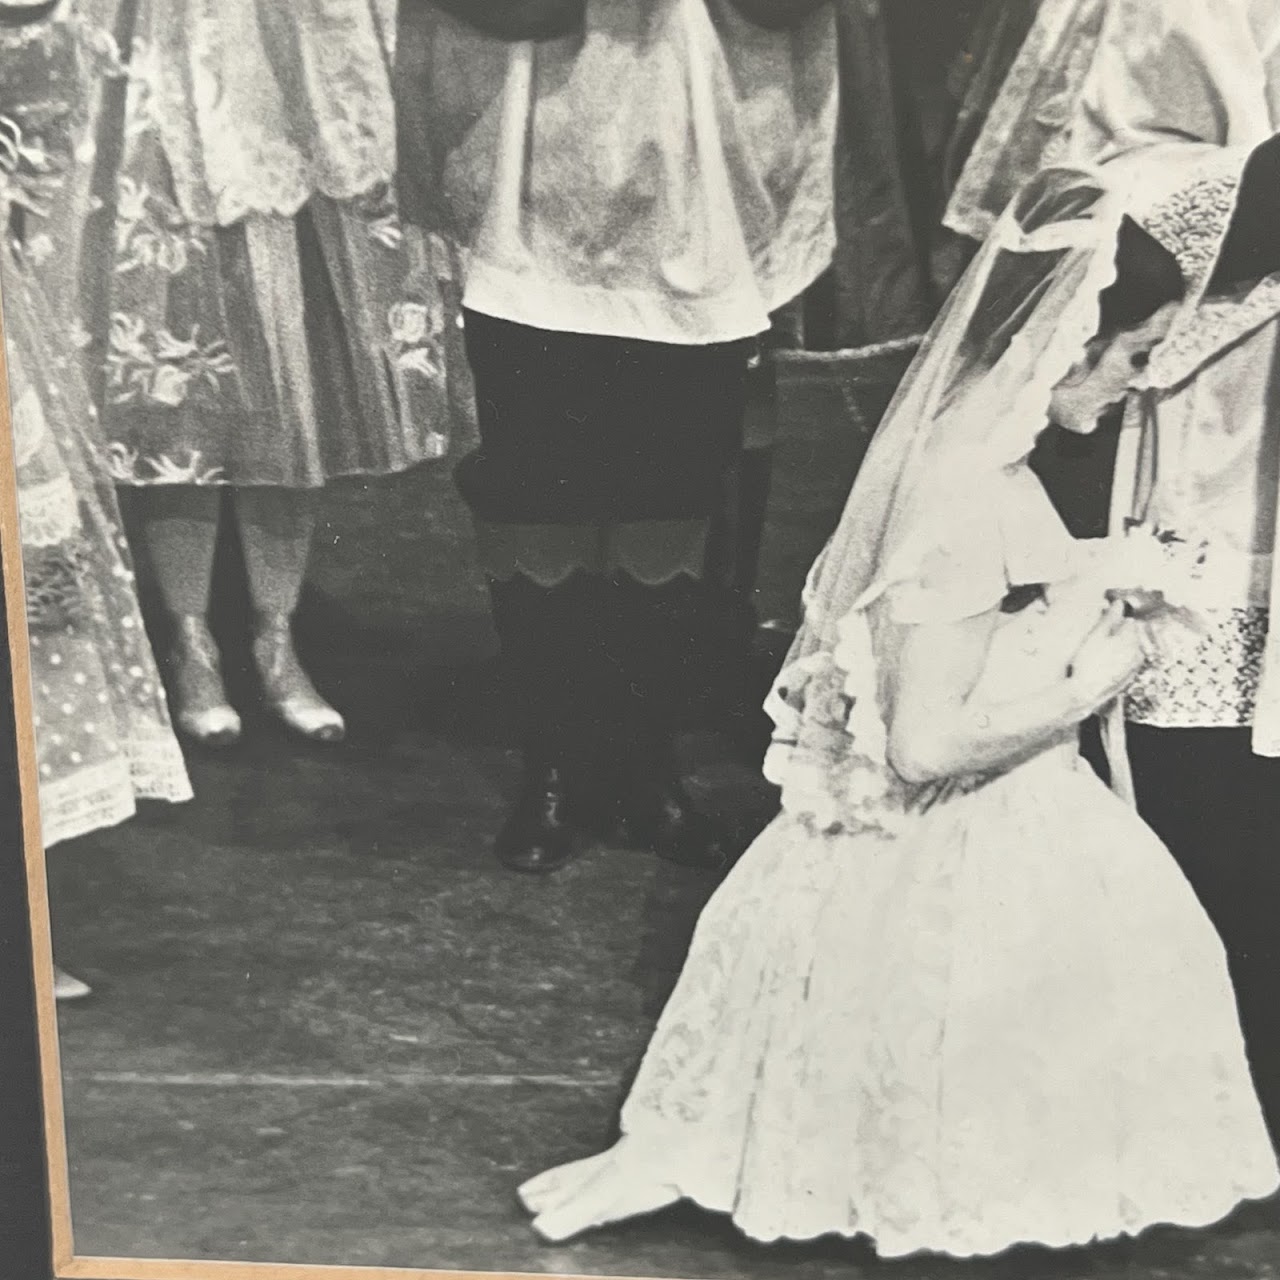 1960s Modern Ballet Performance Photograph Diptych